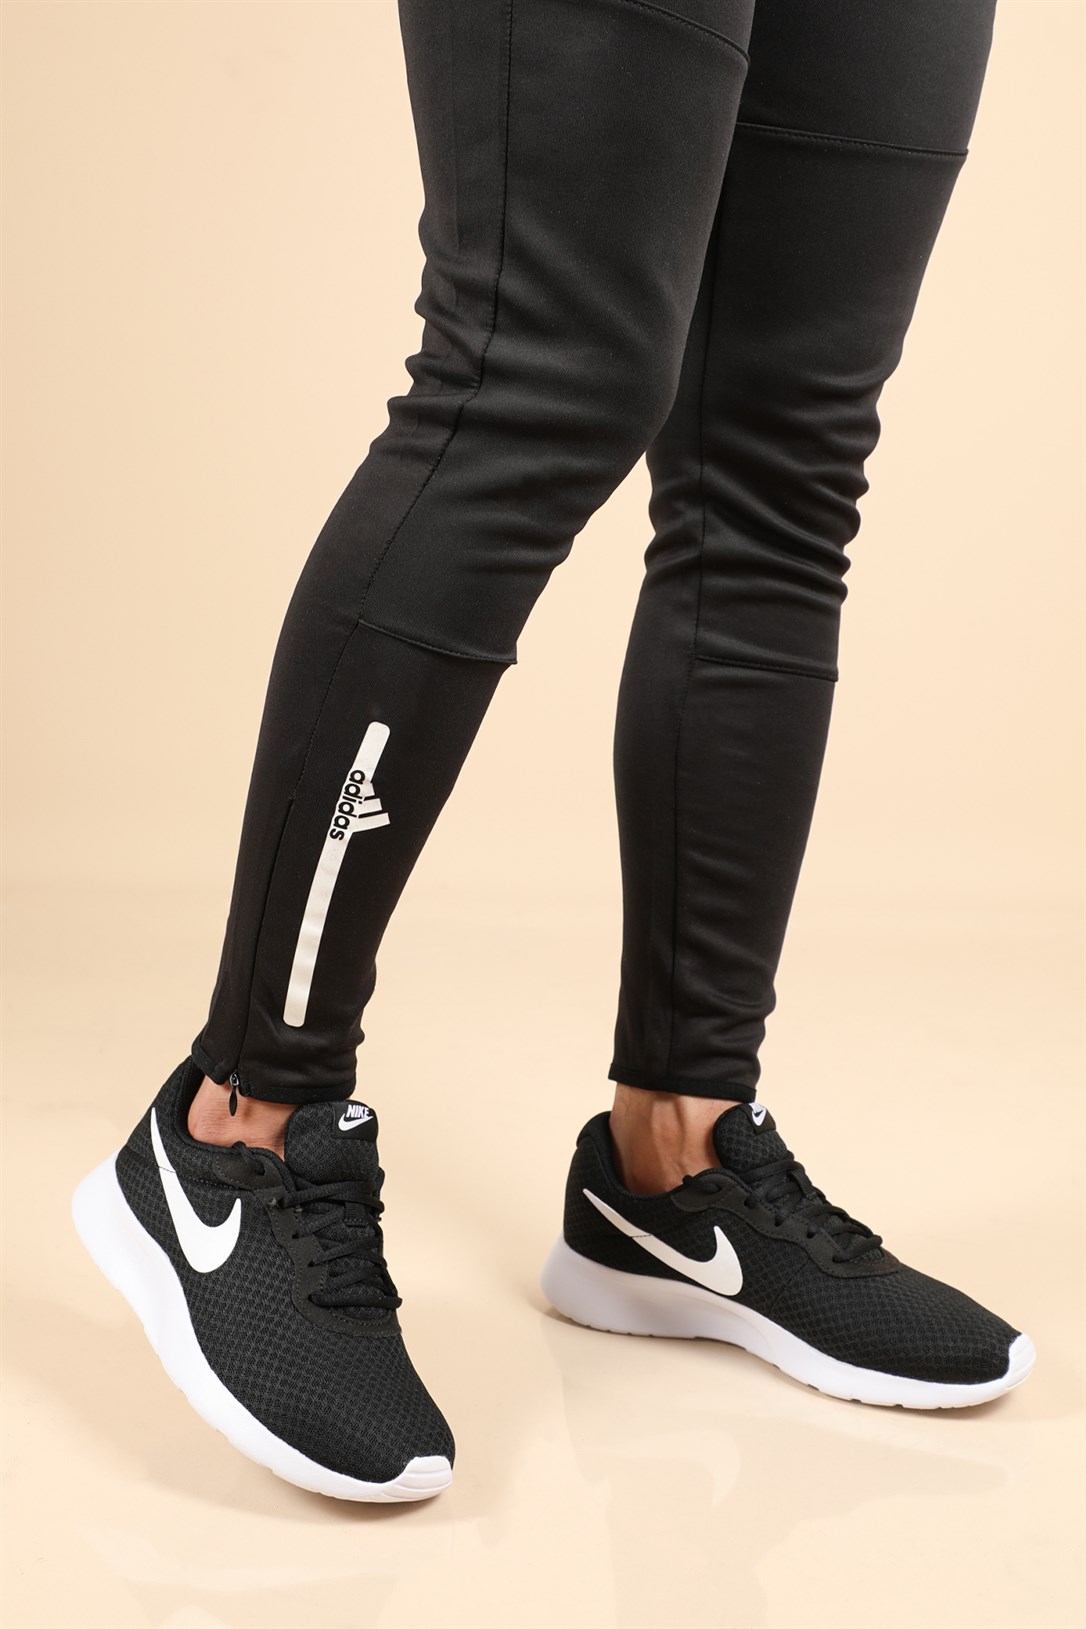 Nike Günlük Koşu Yürüyüş Syh Beyaz Erkek Spor Ayakkabı 812654-011